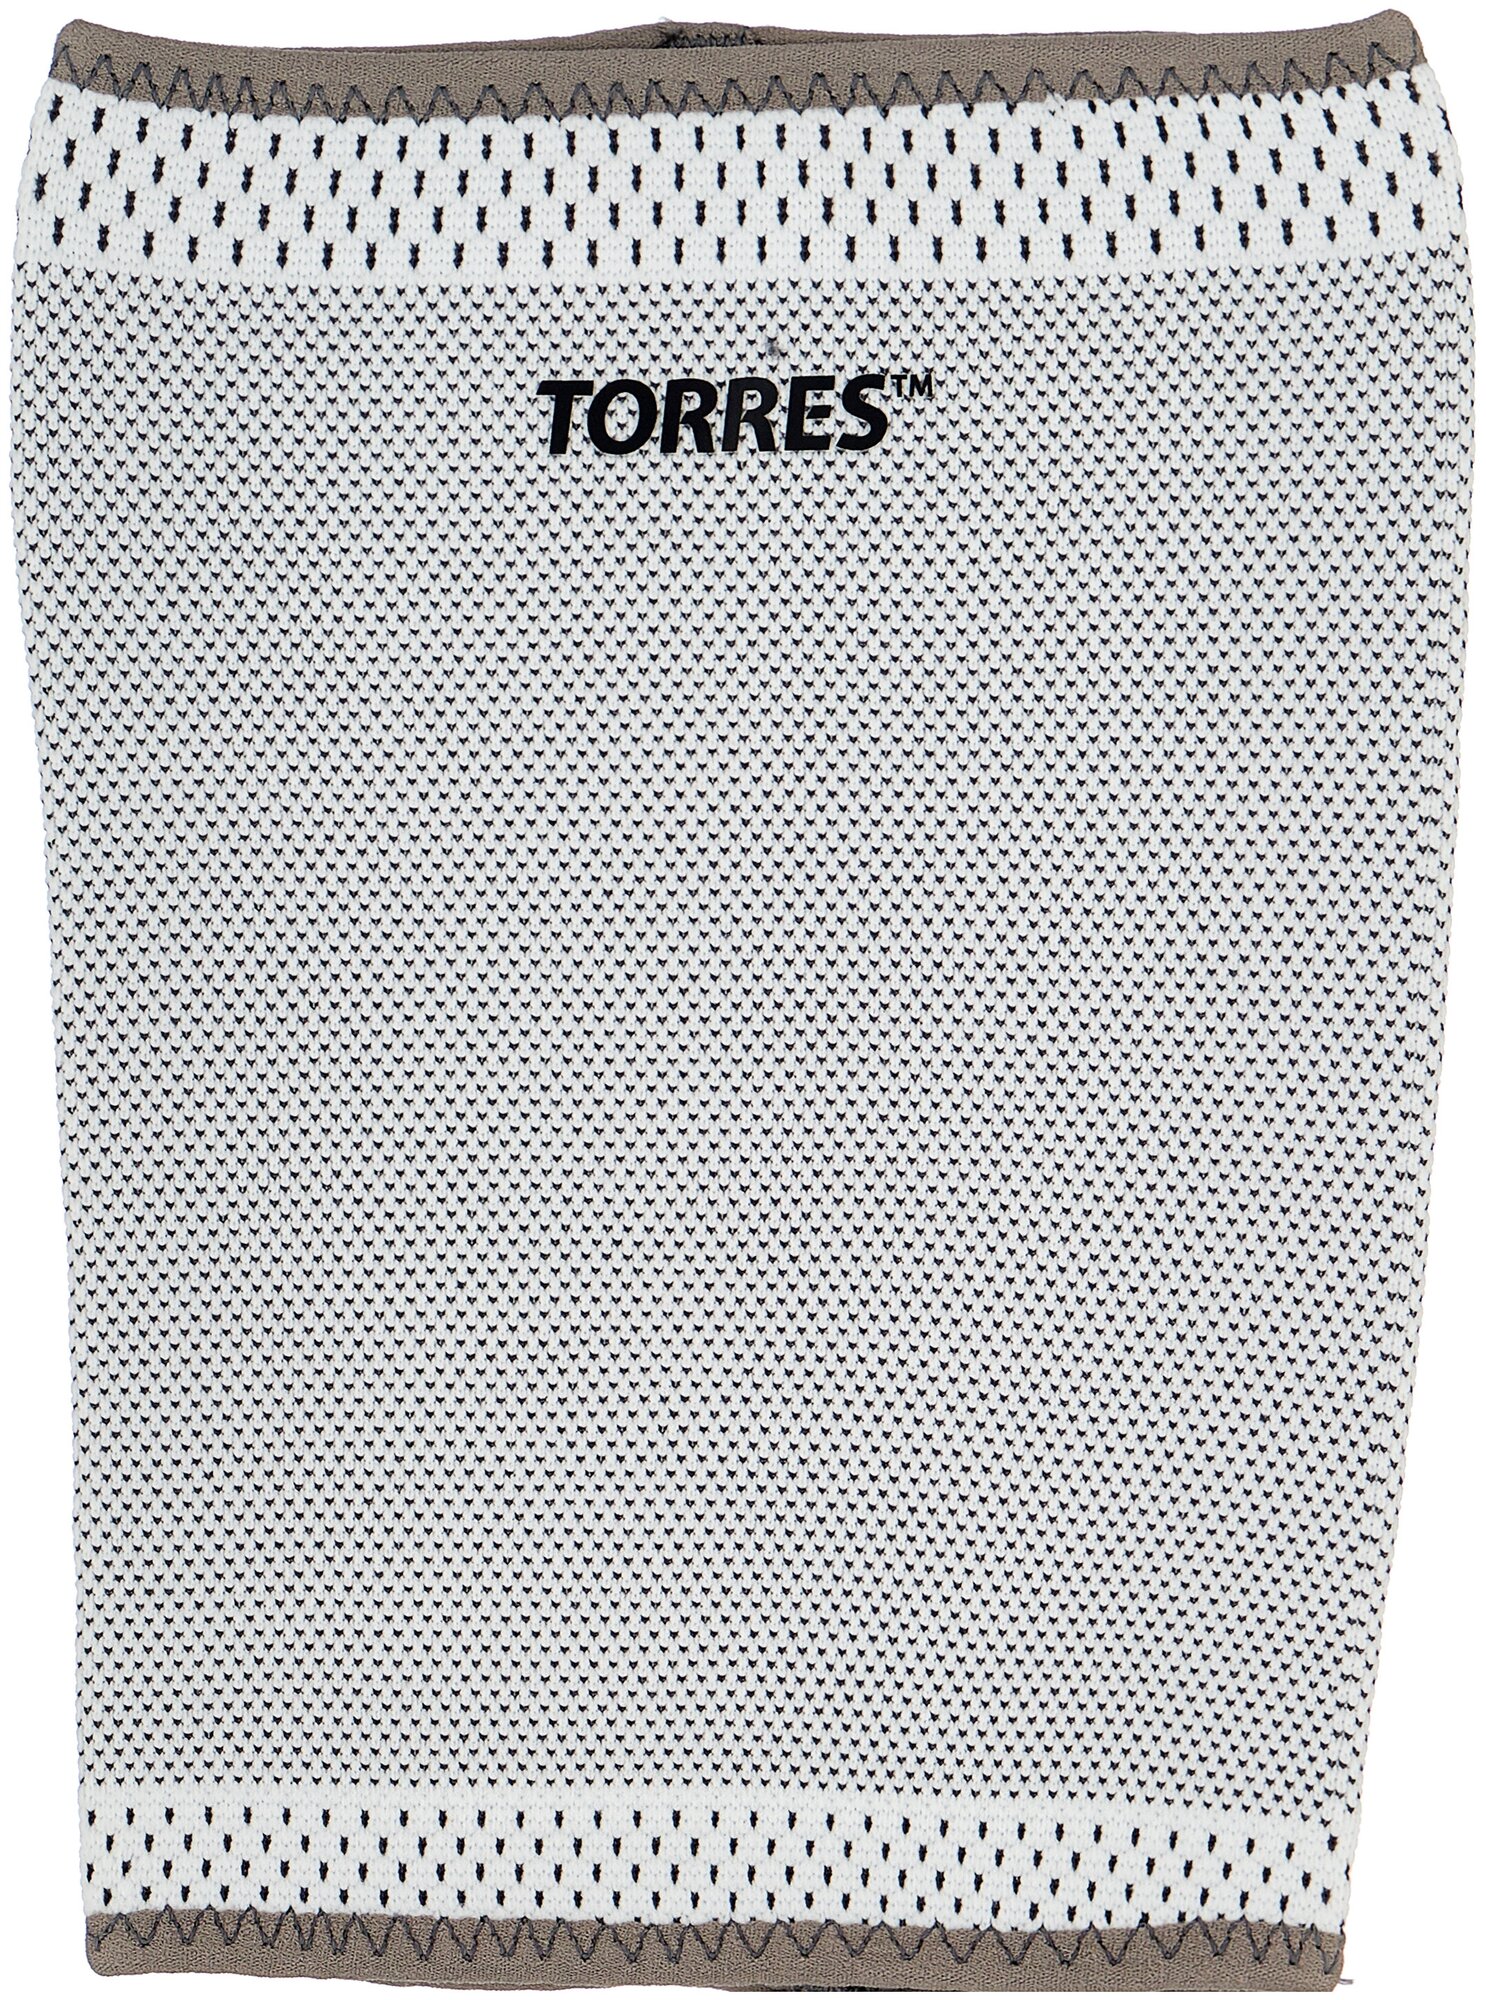 Суппорт бедра TORRES PRL11011L, размер L